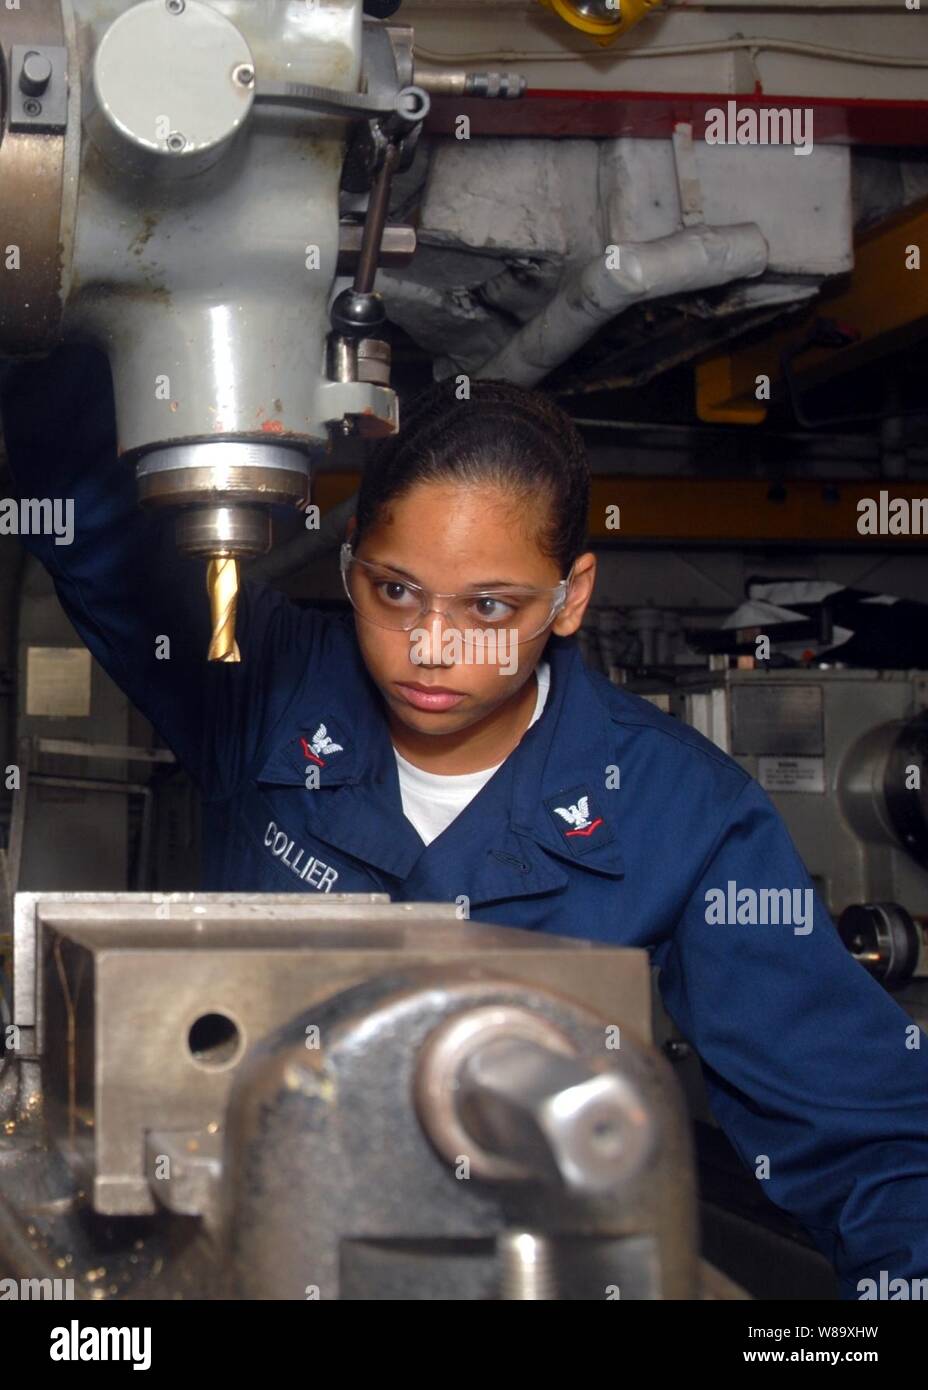 U.S. Navy Petty Officer 3rd Class Valerie Collier führt die Instandhaltung an einer Fräsmaschine im Maschinen Shop an Bord der Amphibisches Schiff USS Essex (LHD-2) im Ostchinesischen Meer am 17. Juni 2009. Stockfoto